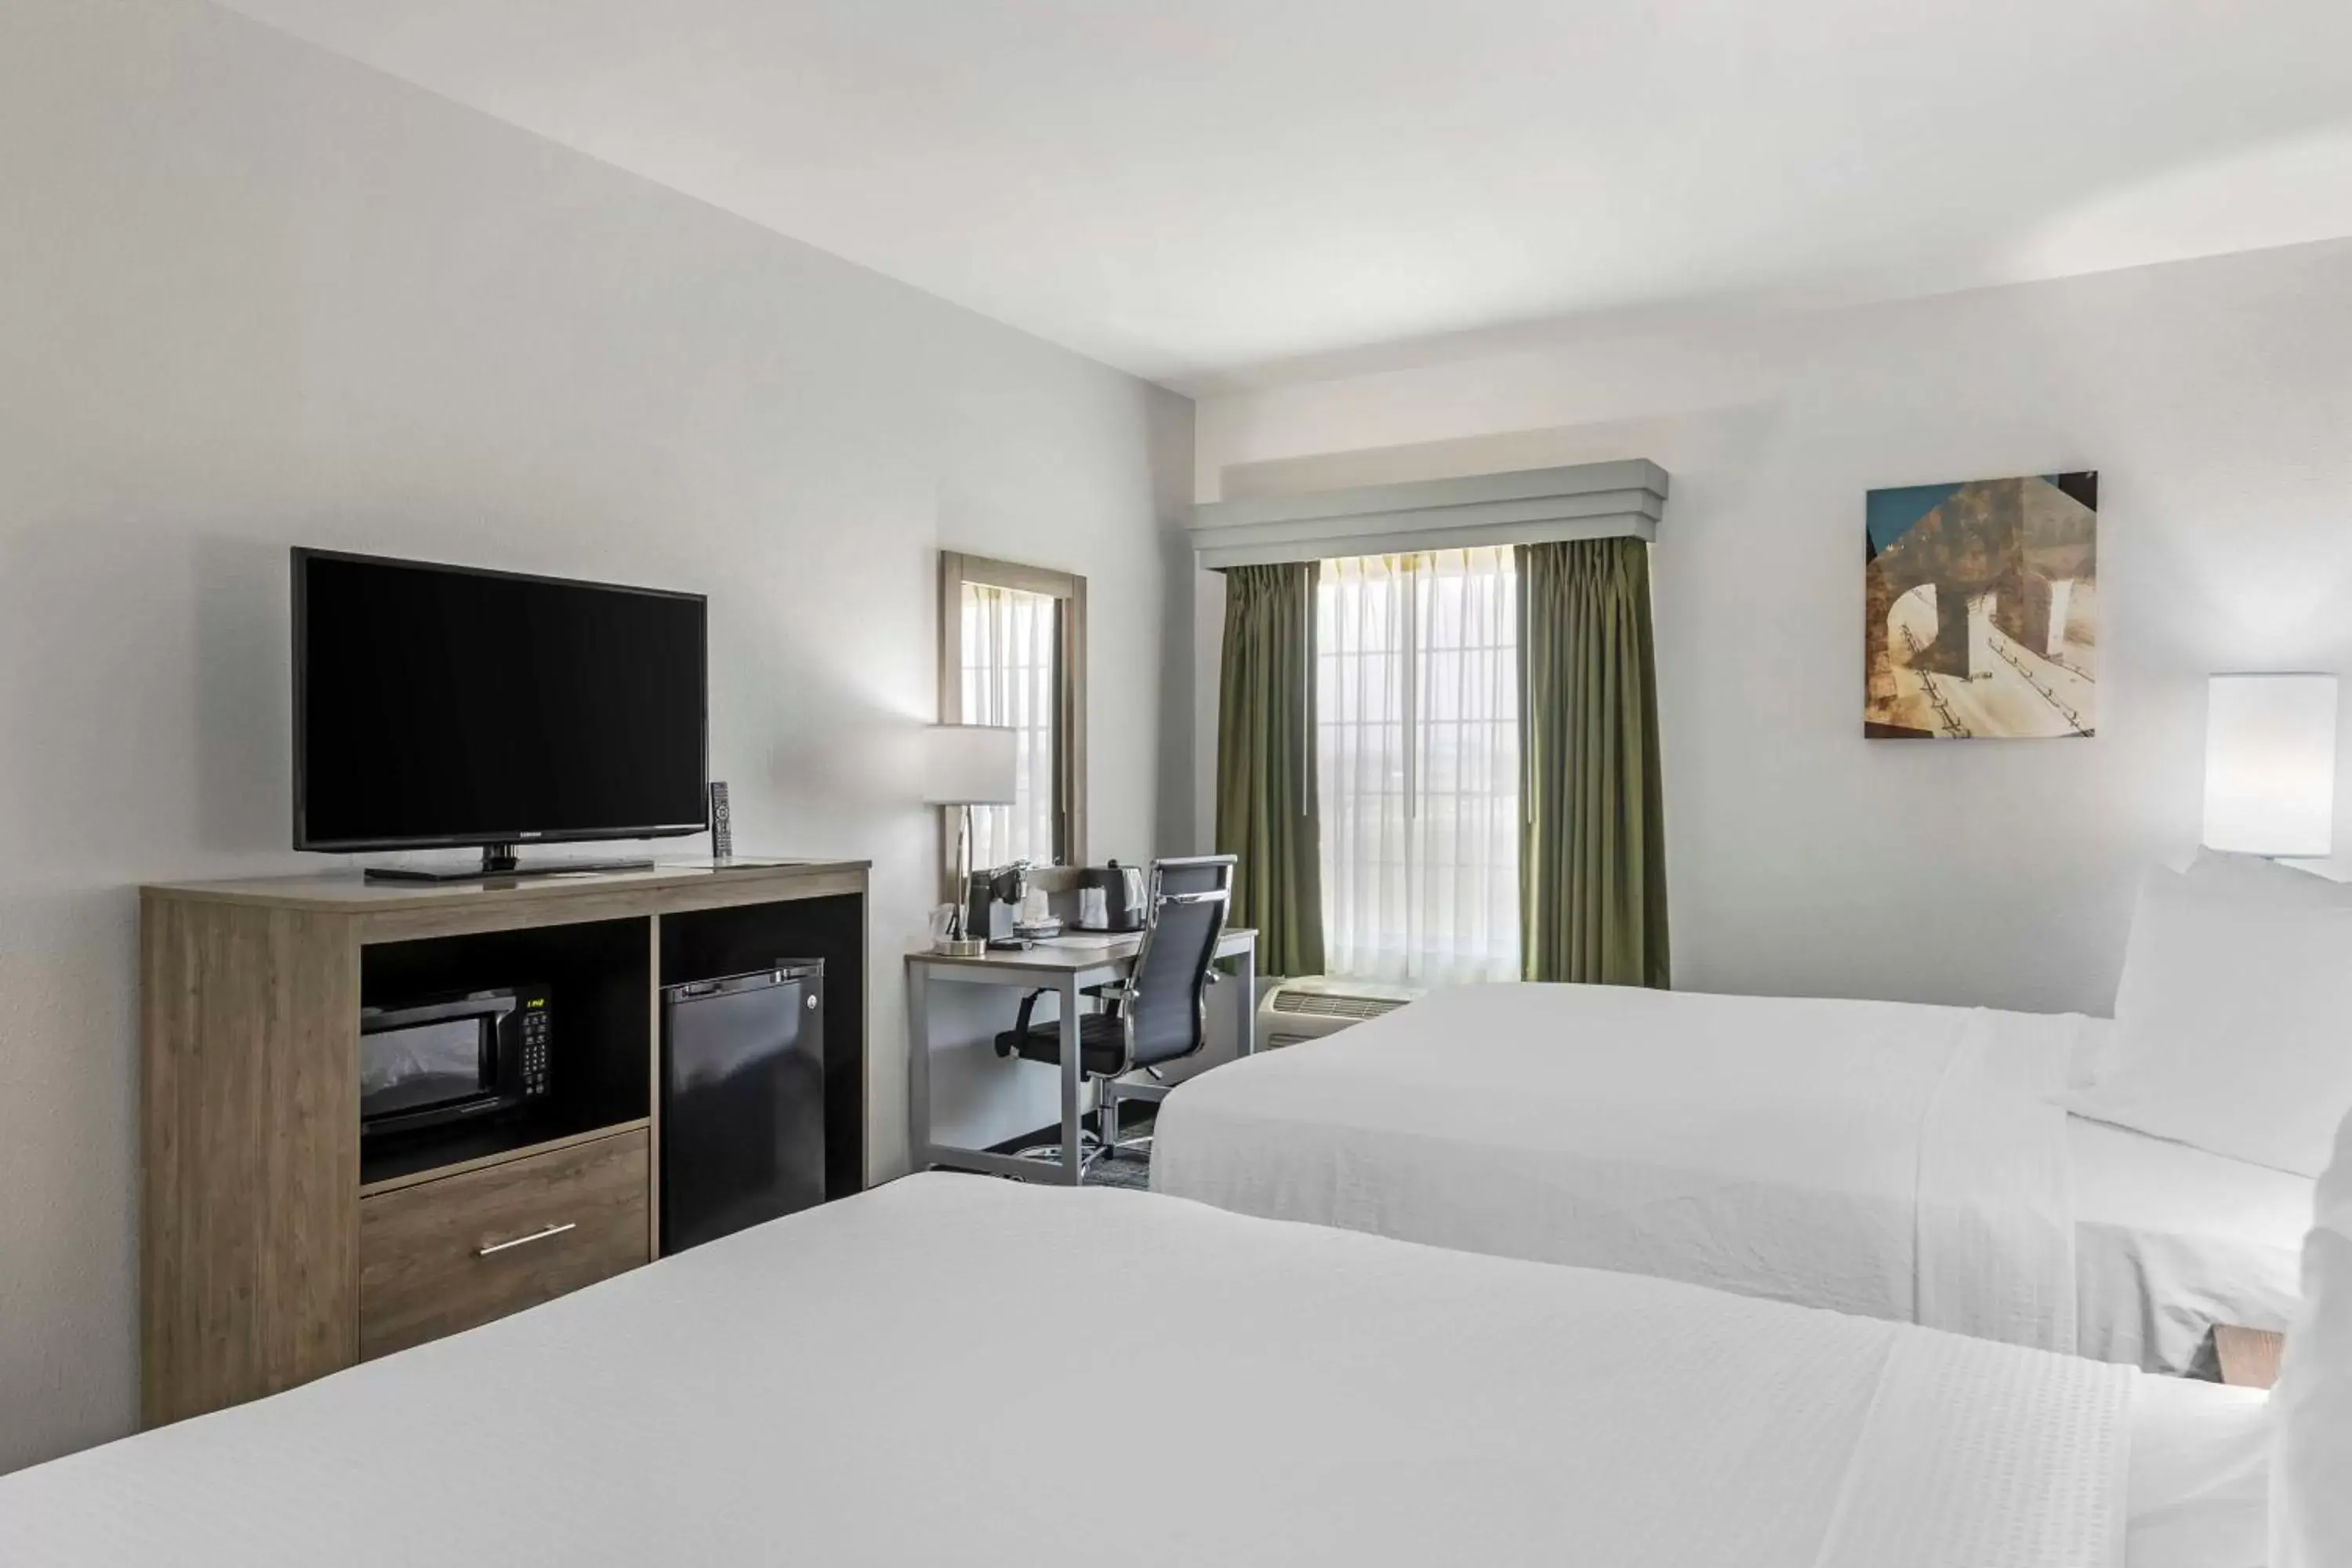 Bedroom, Bed in Best Western Plus MidAmerica Hotel